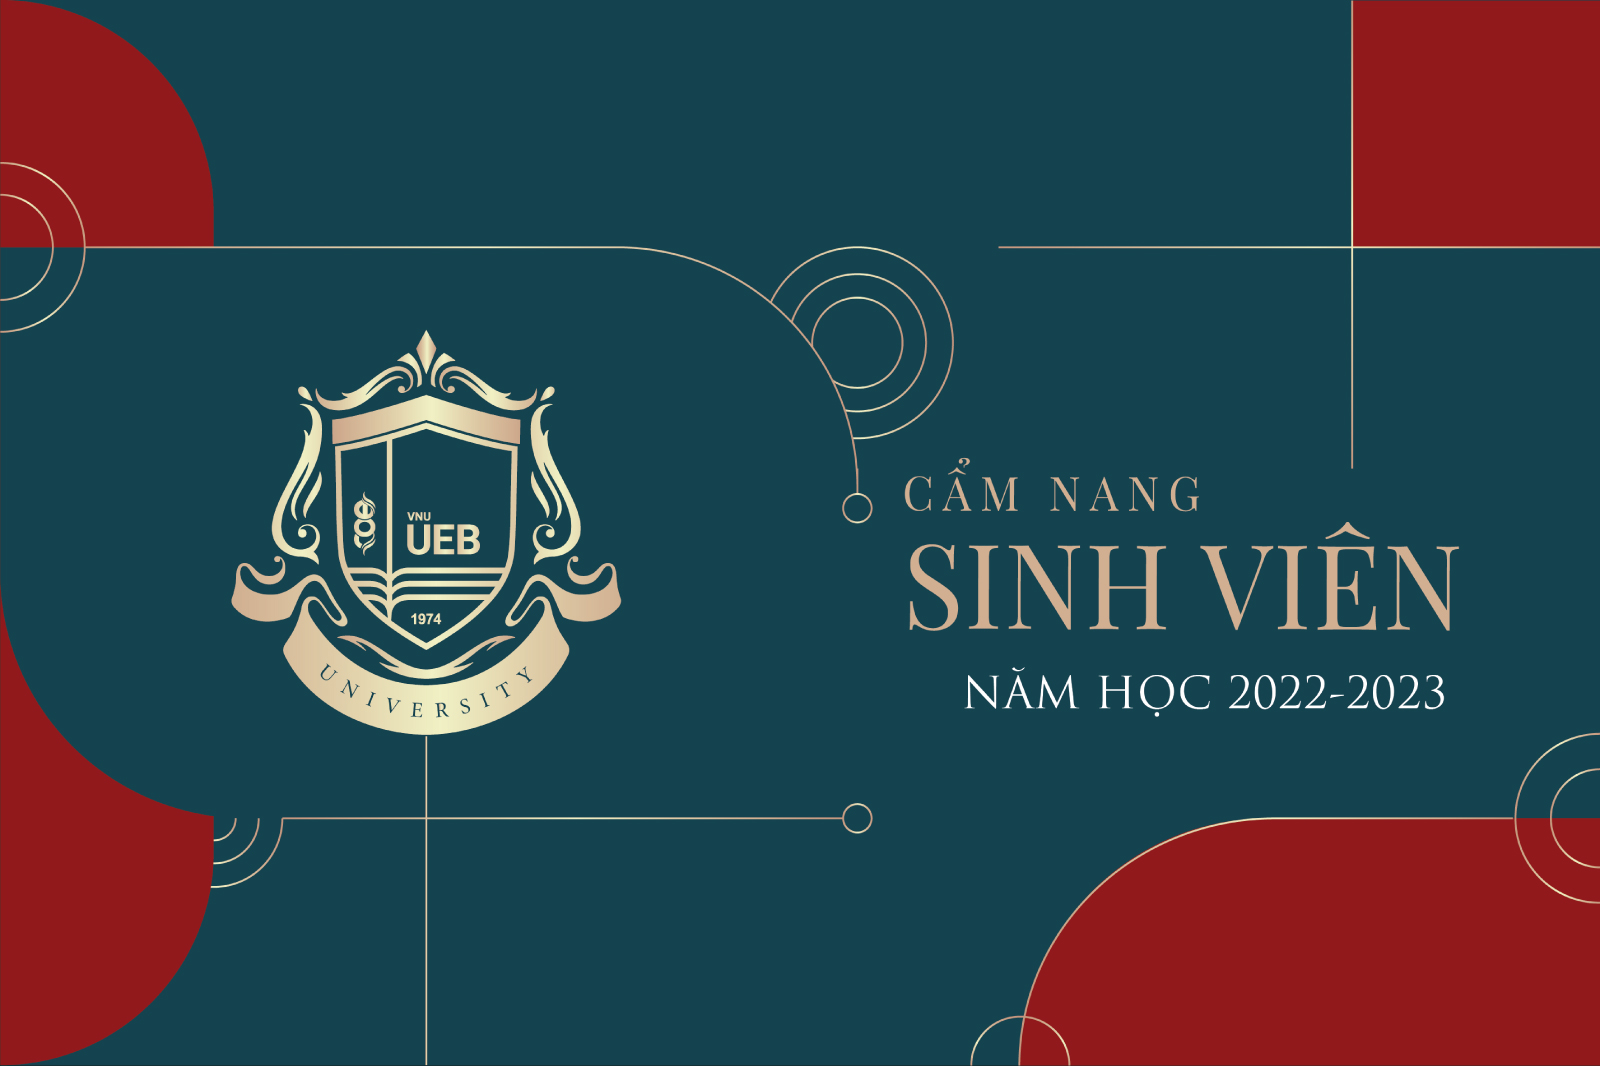 Cẩm nang sinh viên Trường Đại học Kinh tế - ĐHQGHN năm học 2022-2023